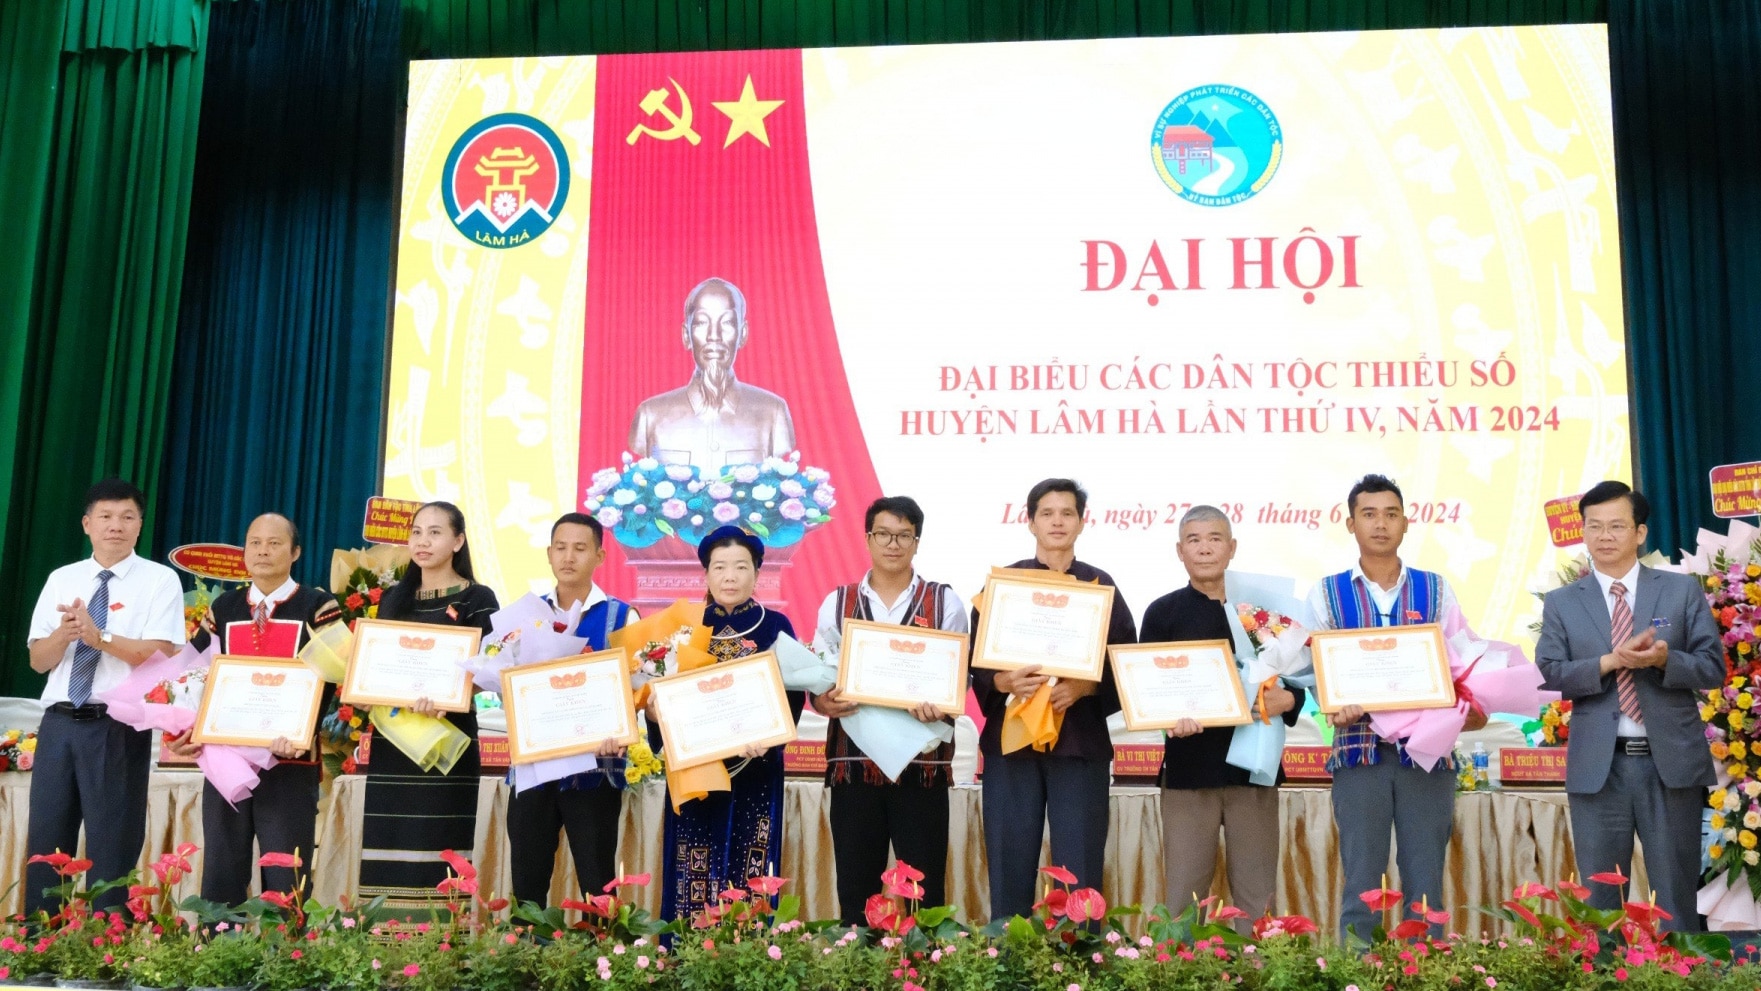 Tặng giấy khen của UBND huyện Lâm Hà cho các tập thể